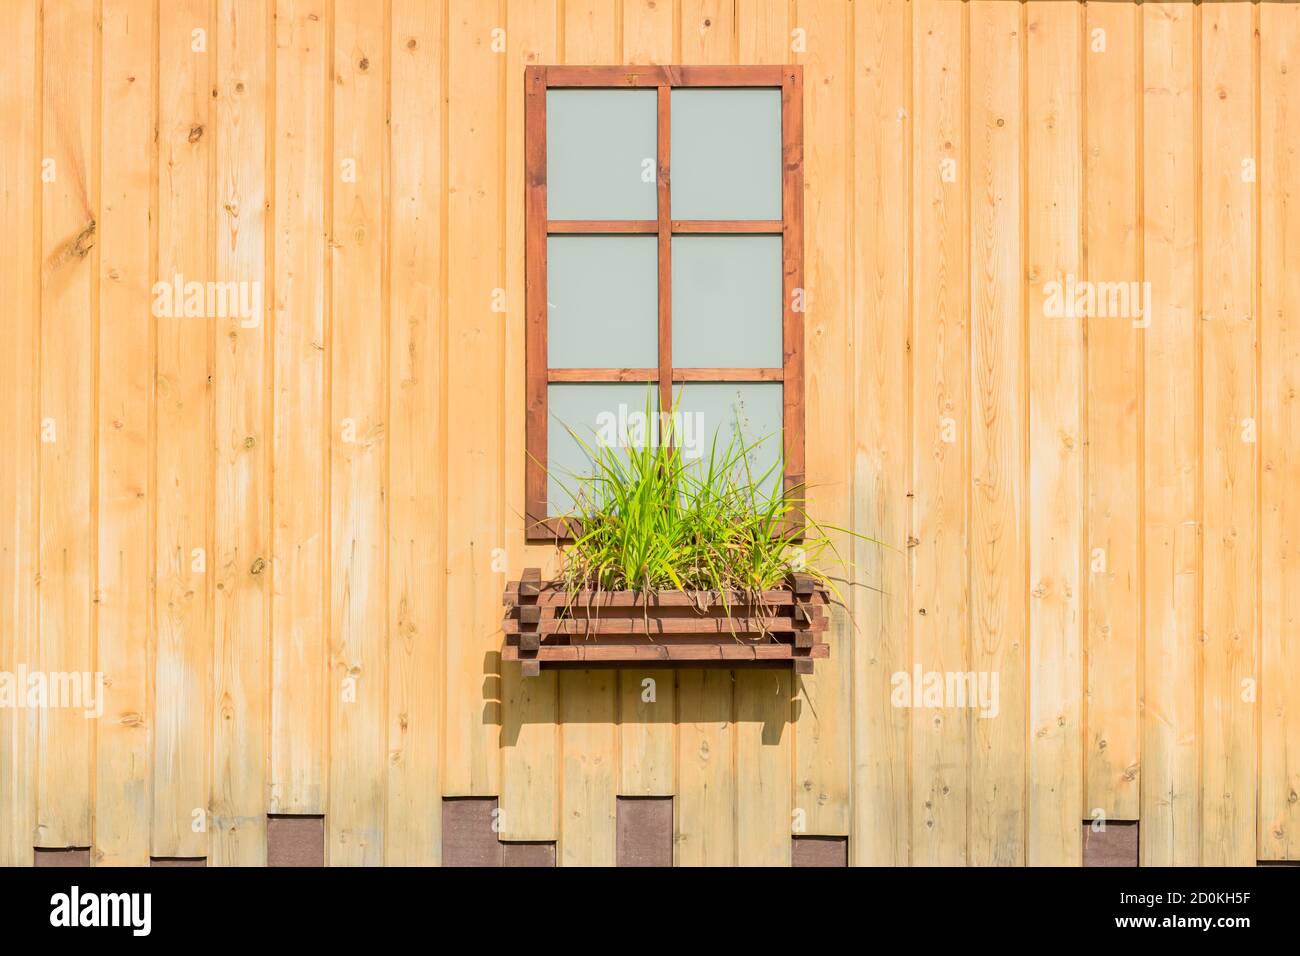 Fausse fenêtre sur un mur en bois. Décoration extérieure. Style de vie de campagne Banque D'Images